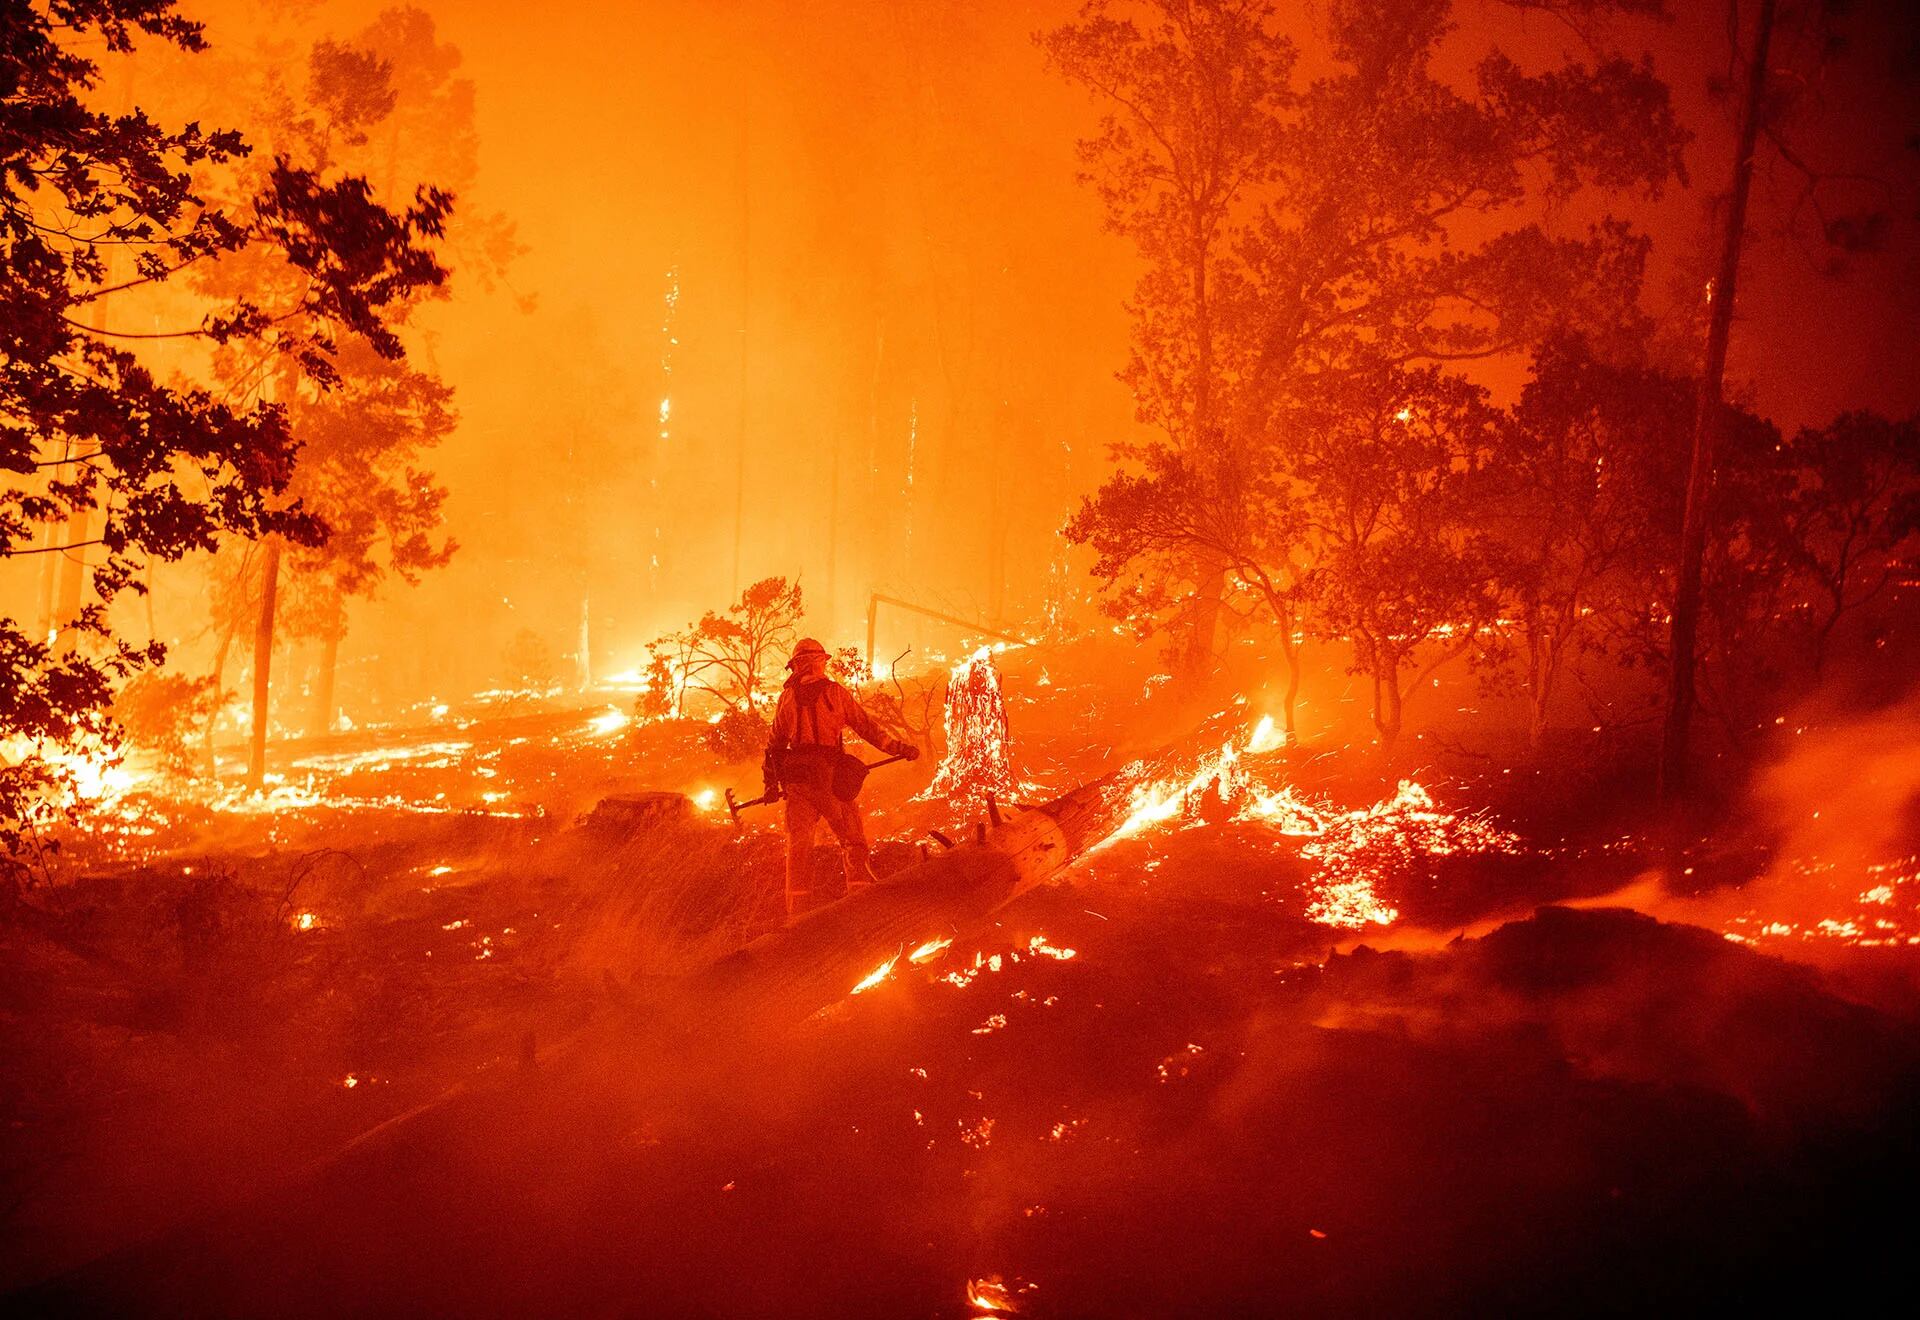 Un bombero trabaja para intentar sofocar el incendio mientras las llamas se dirigen hacia las casas en el área de Cascadel Woods de la zona no incorporada del condado de Madera, California, el 7 de septiembre de 2020 (Foto de JOSH EDELSON / AFP)